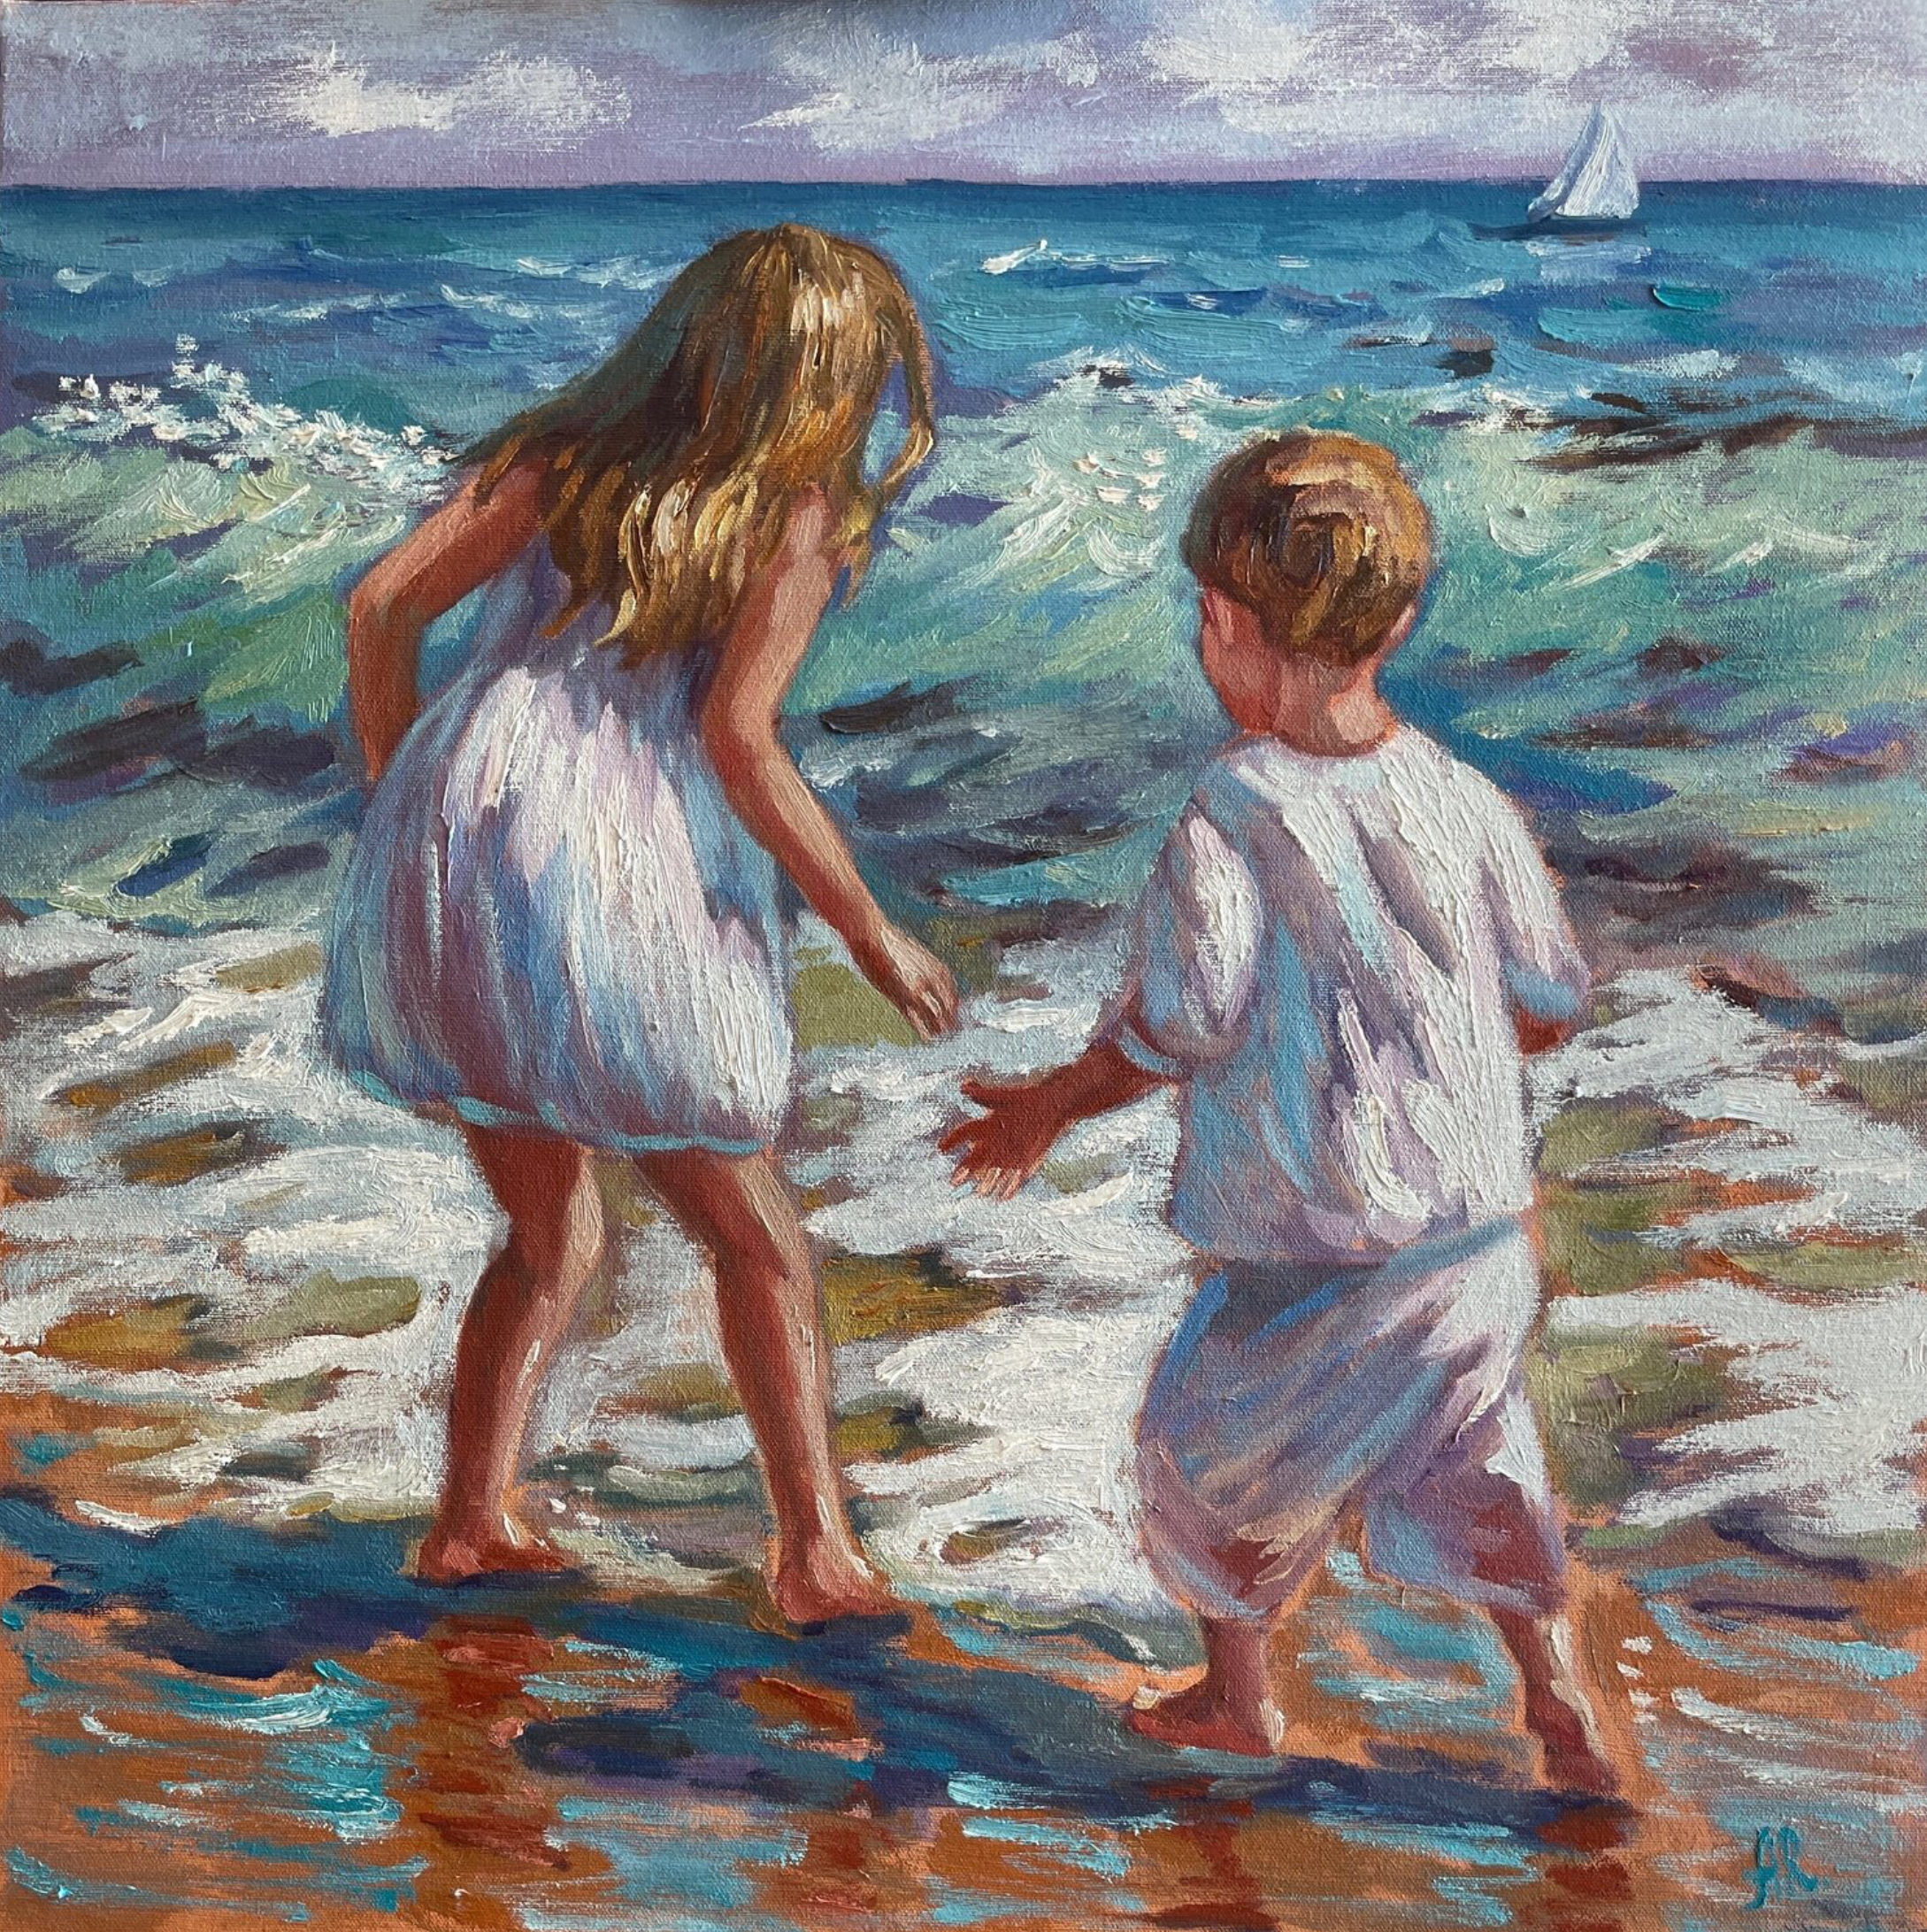 El cuadro "Persiguiendo las olas", de Anna Reznikova, muestra a unos niños jugando junto al mar. Predominan los colores turquesa y azul.